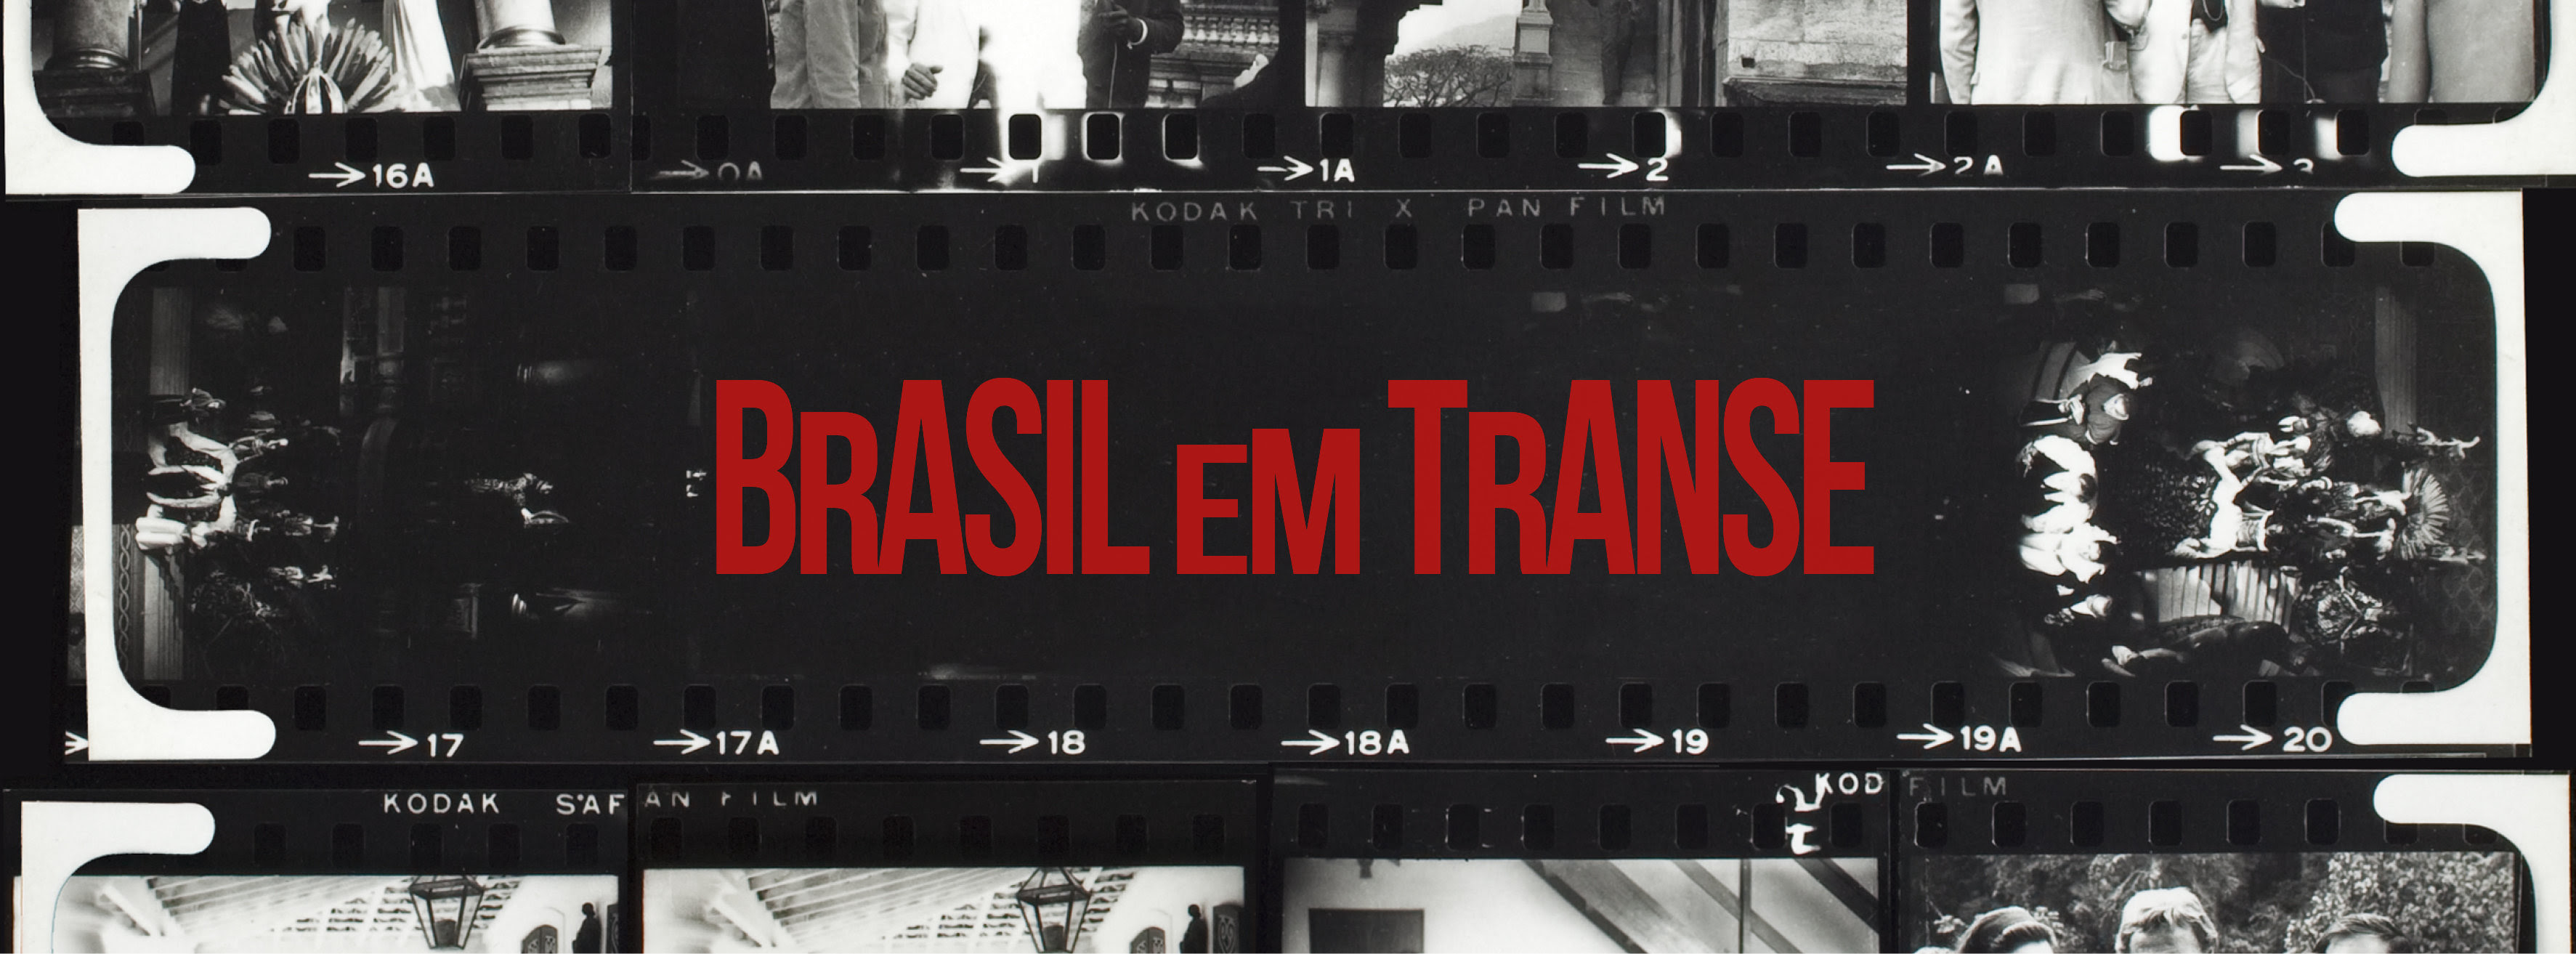 Mostra do Cinema da USP marca 50 anos de efervescência cultural brasileira